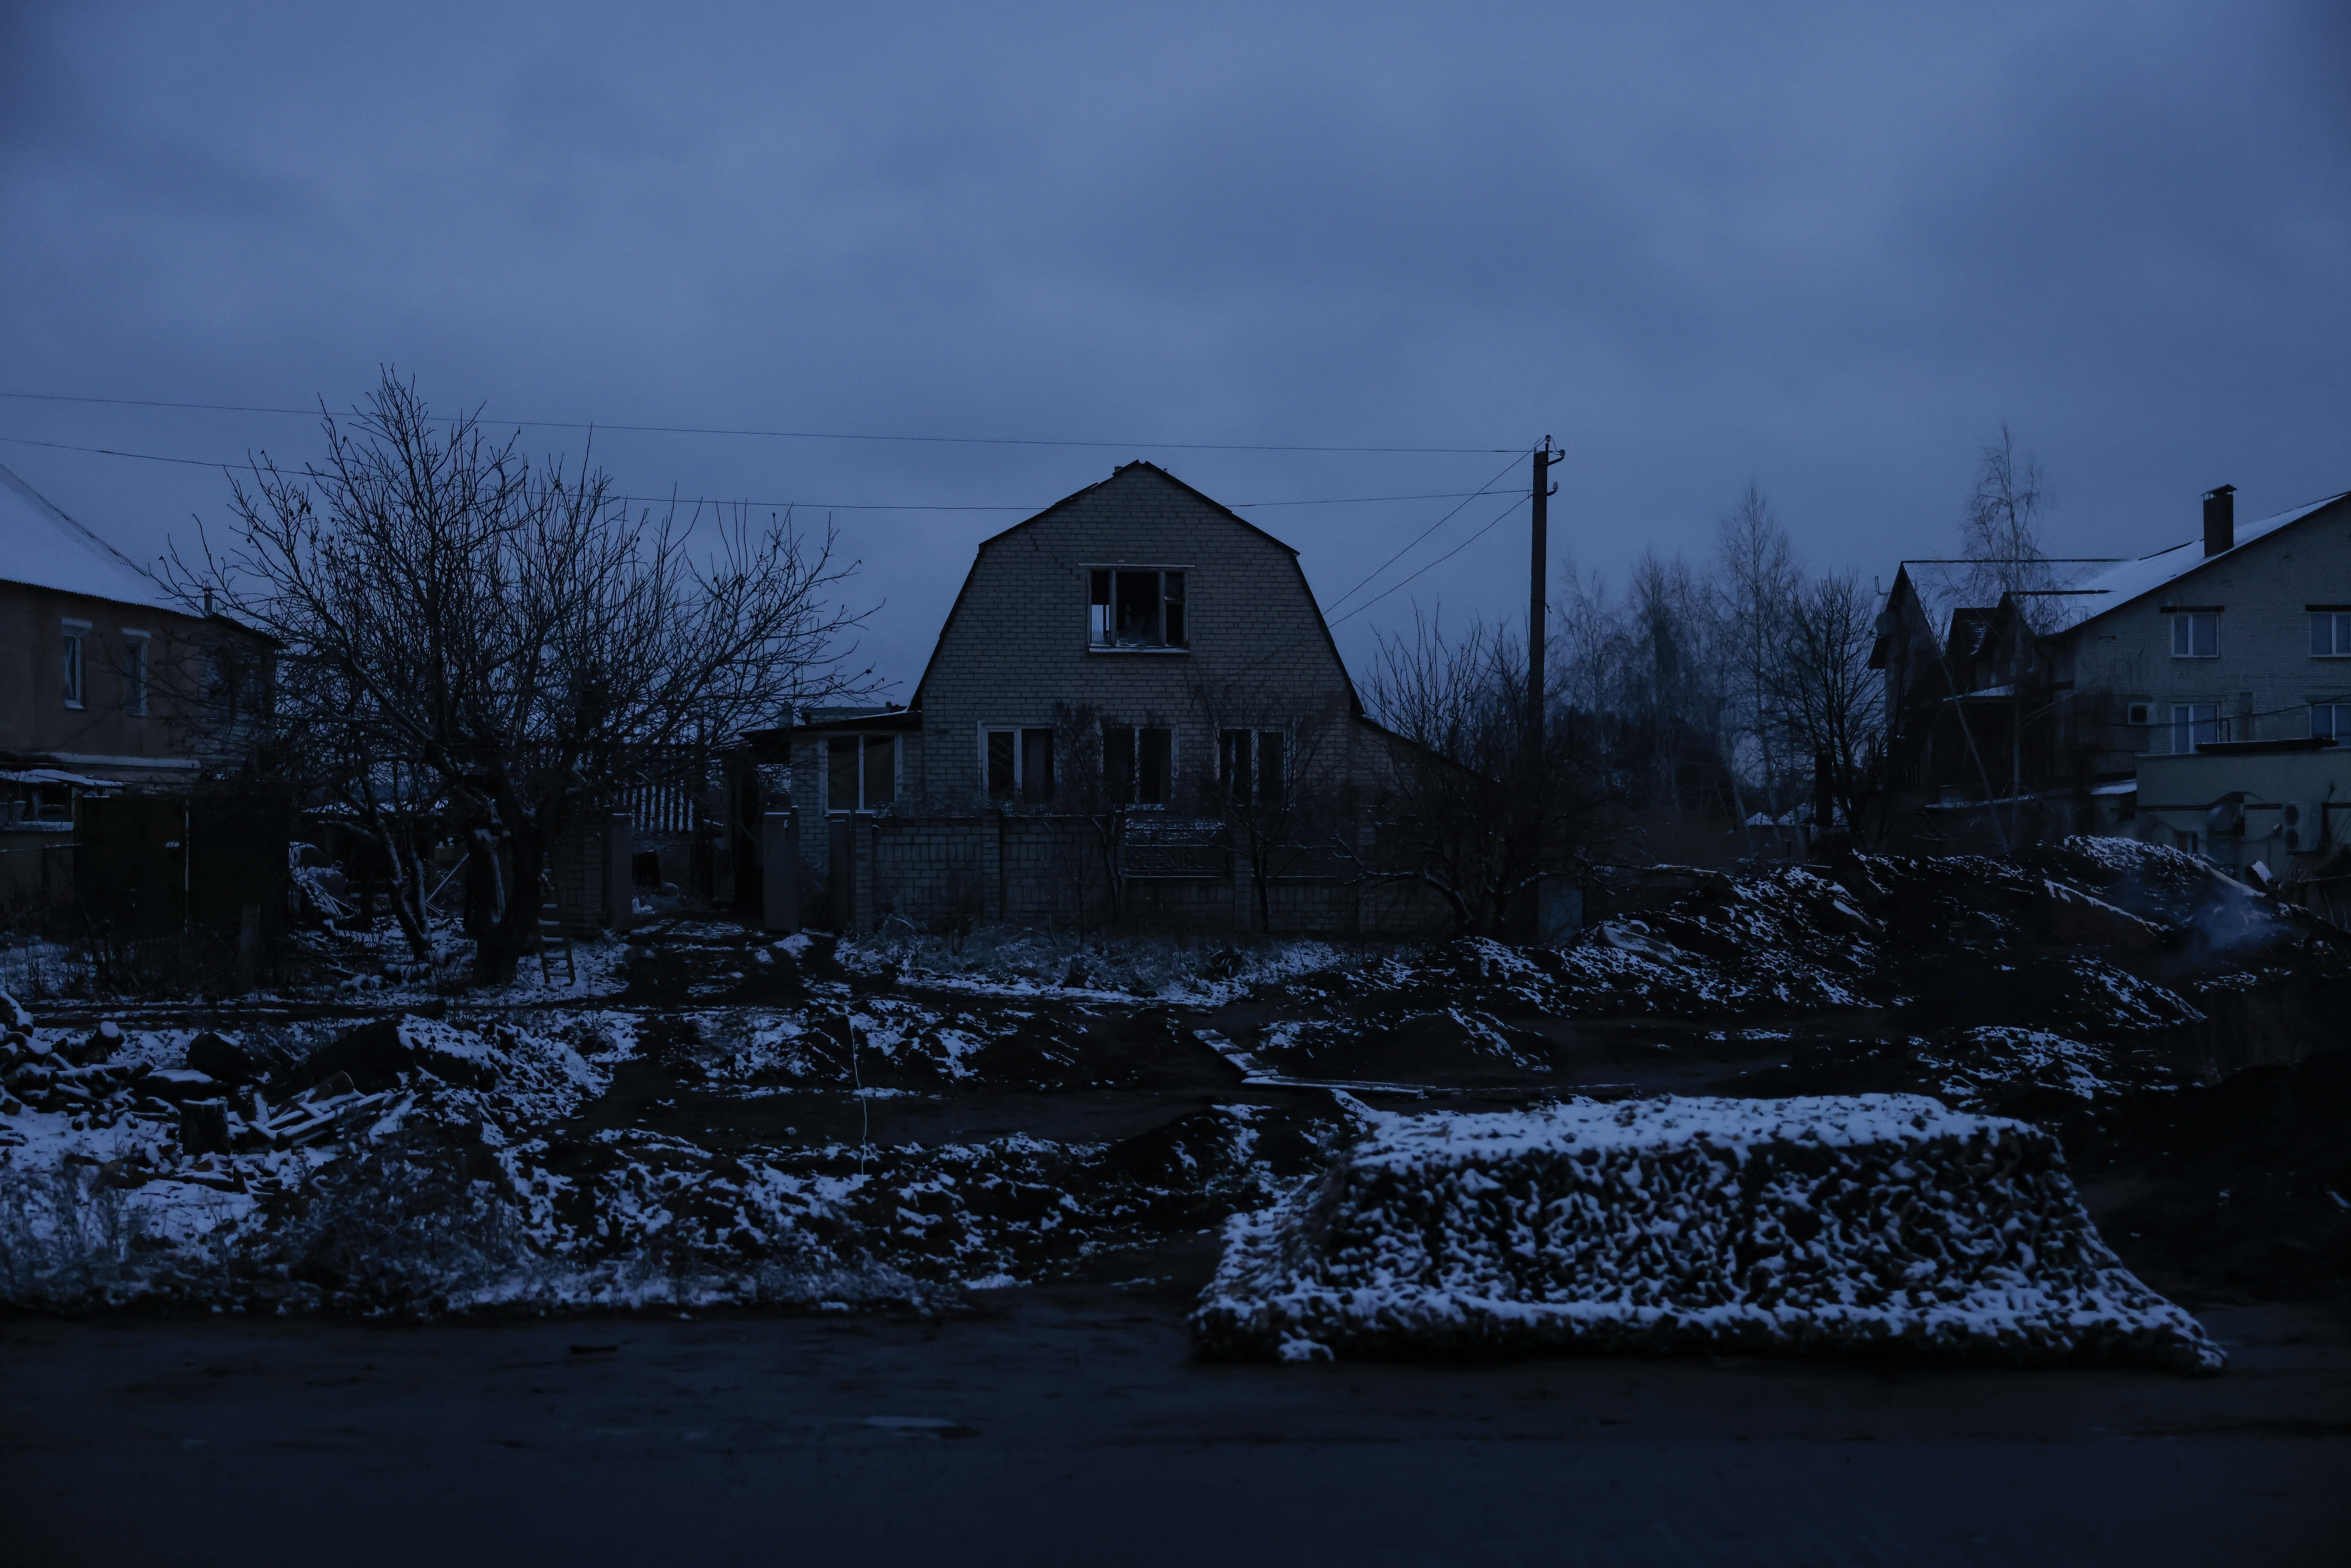 Près de Kharkiv (Ukraine), le 16 novembre. De nombreux villages bombardés dans l'Est de l'Ukraine sont plongés dans le noir lorsque la nuit tombe. LP/Olivier Corsan